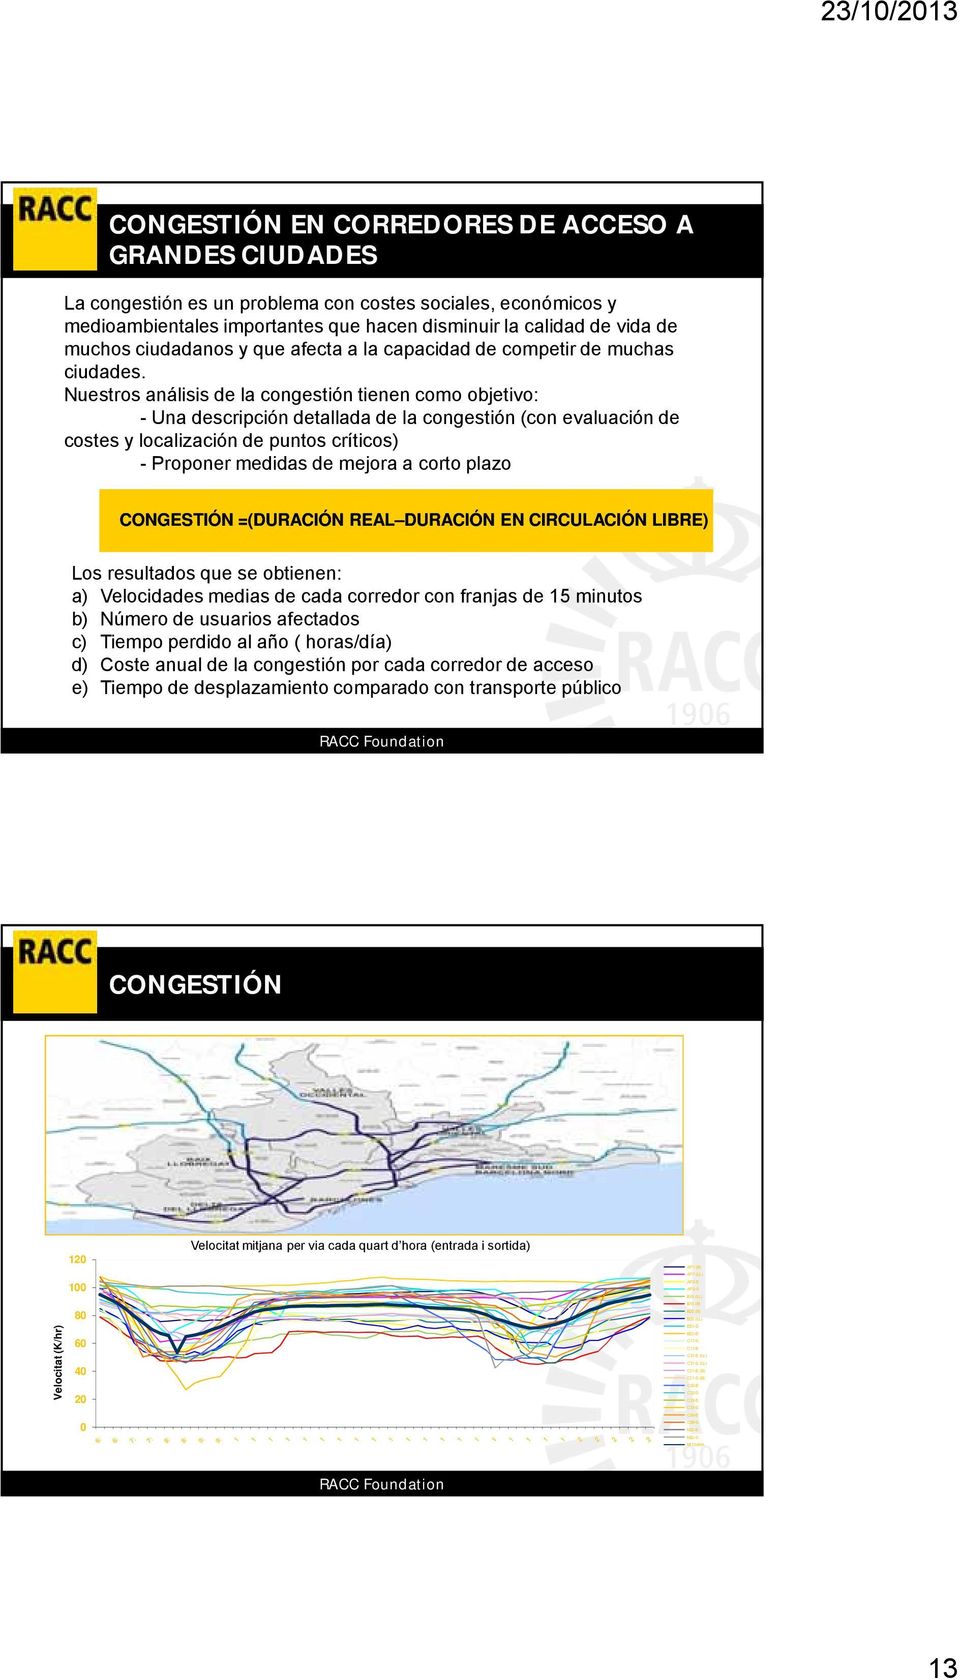 Nuestros análisis de la congestión tienen como objetivo: - Una descripción detallada de la congestión (con evaluación de costes y localización de puntos críticos) - Proponer medidas de mejora a corto